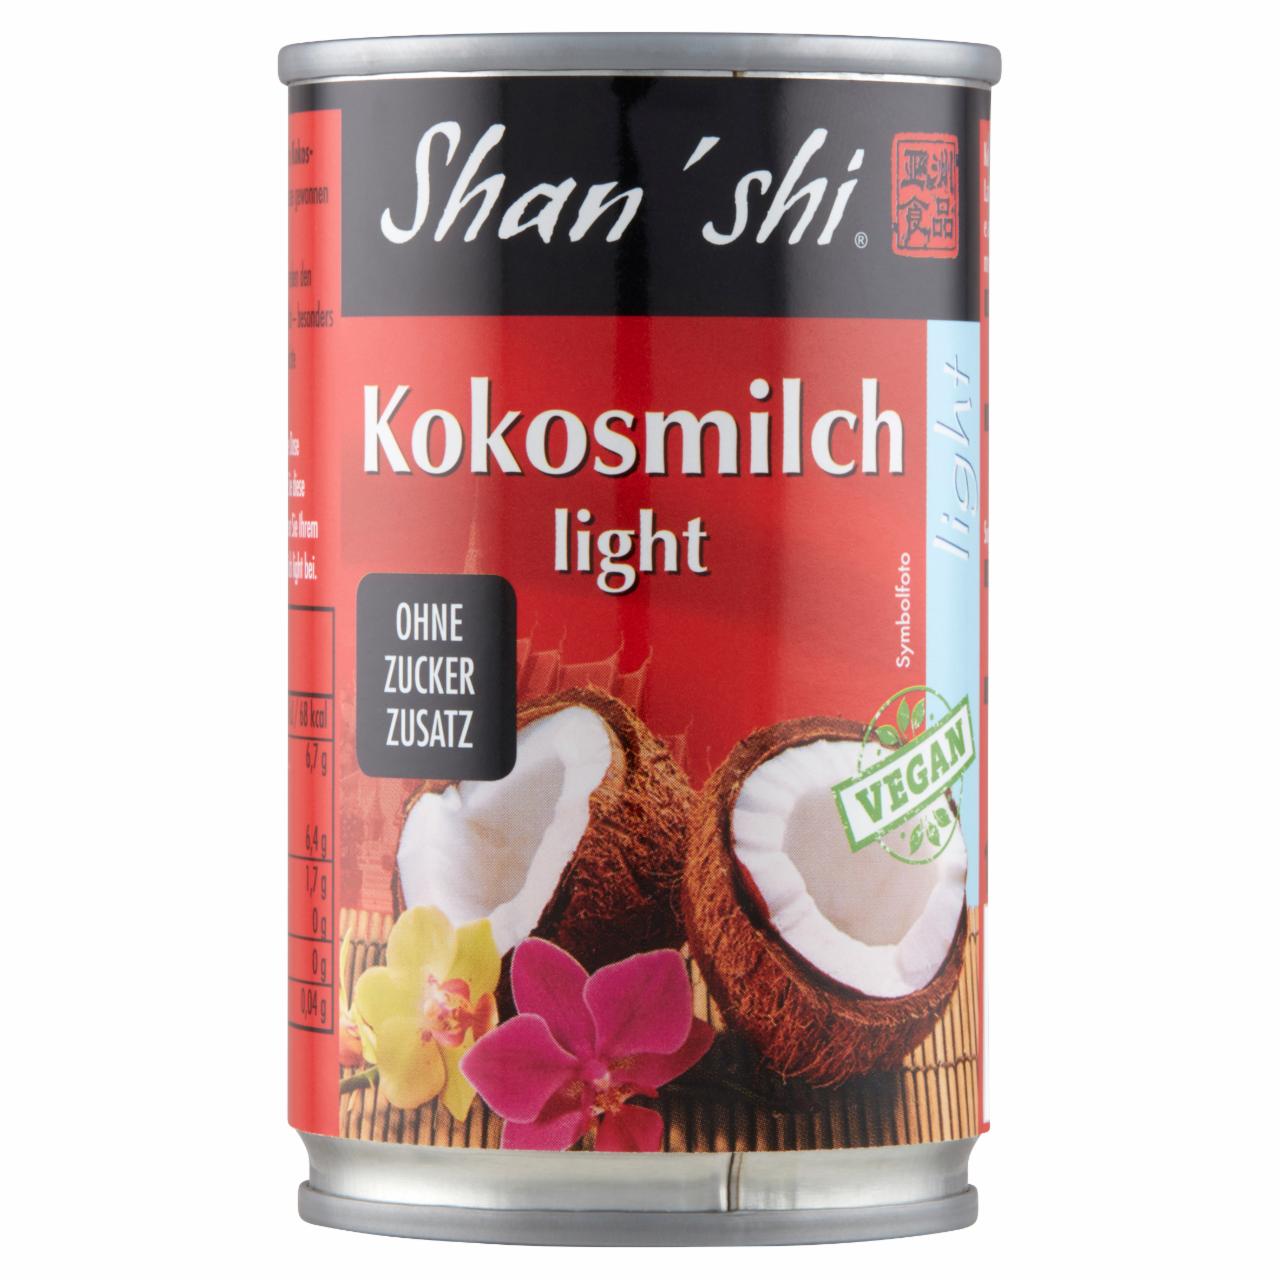 Képek - Shan'shi kókusztej csökkentett zsírtartalommal 165 ml